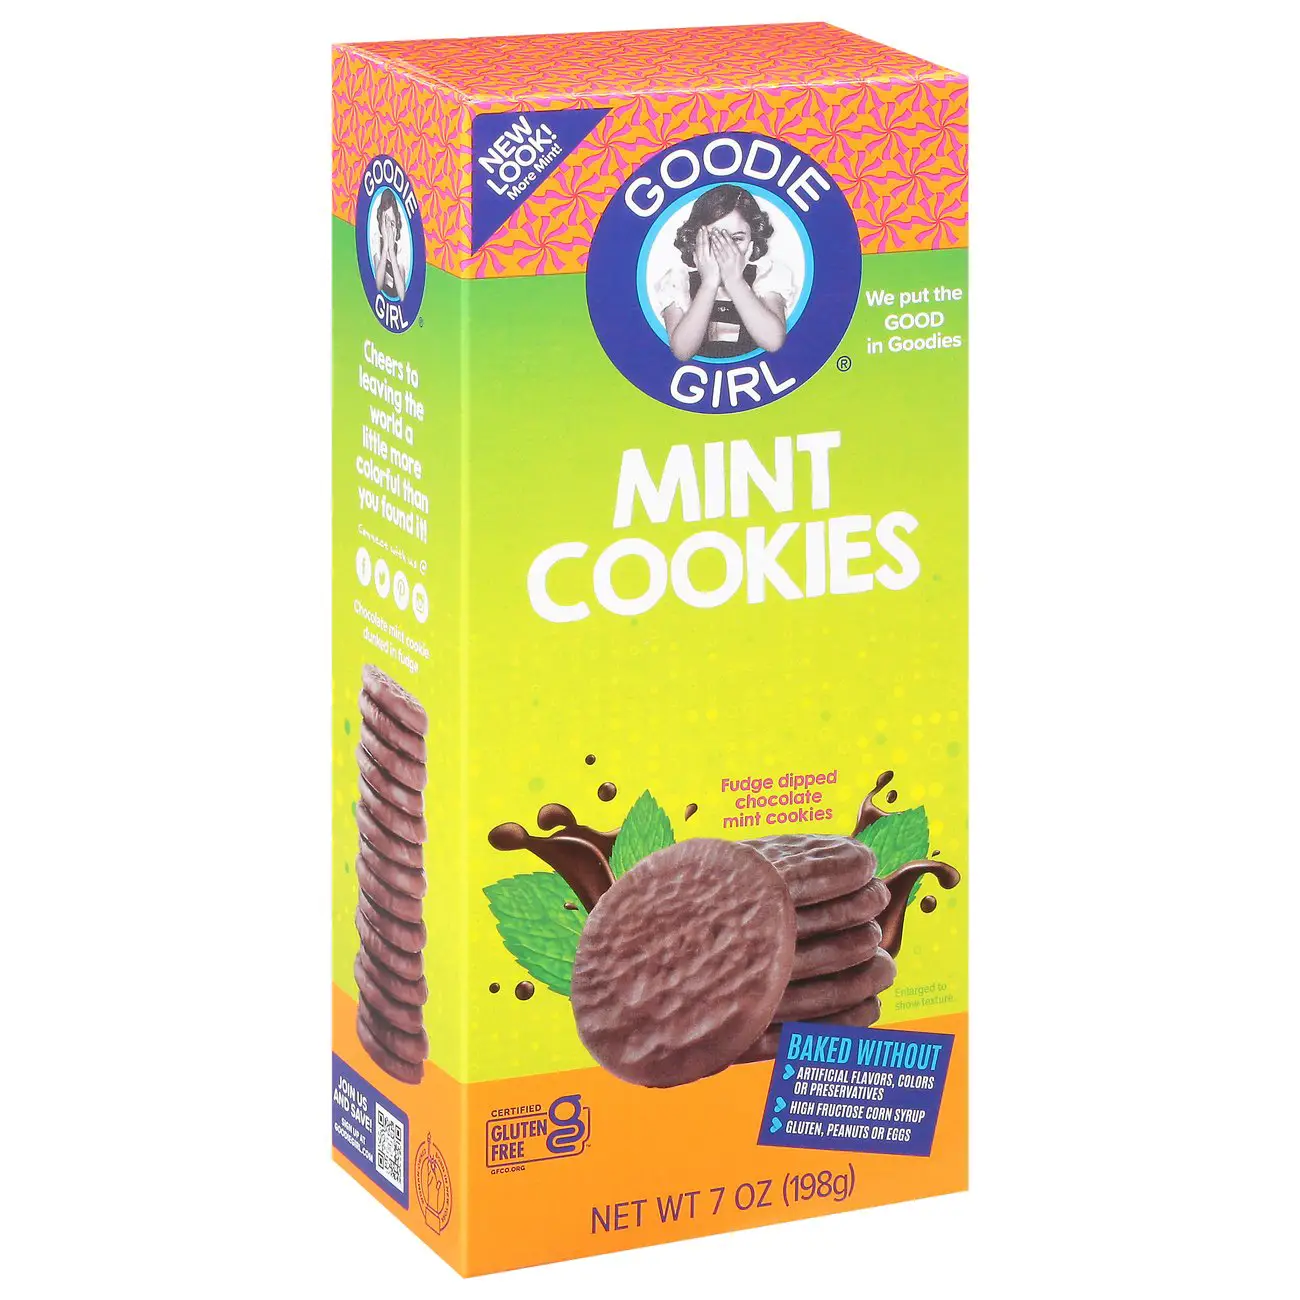 Goodie Girl Cookies Gluten Free Mint Slims Cookies